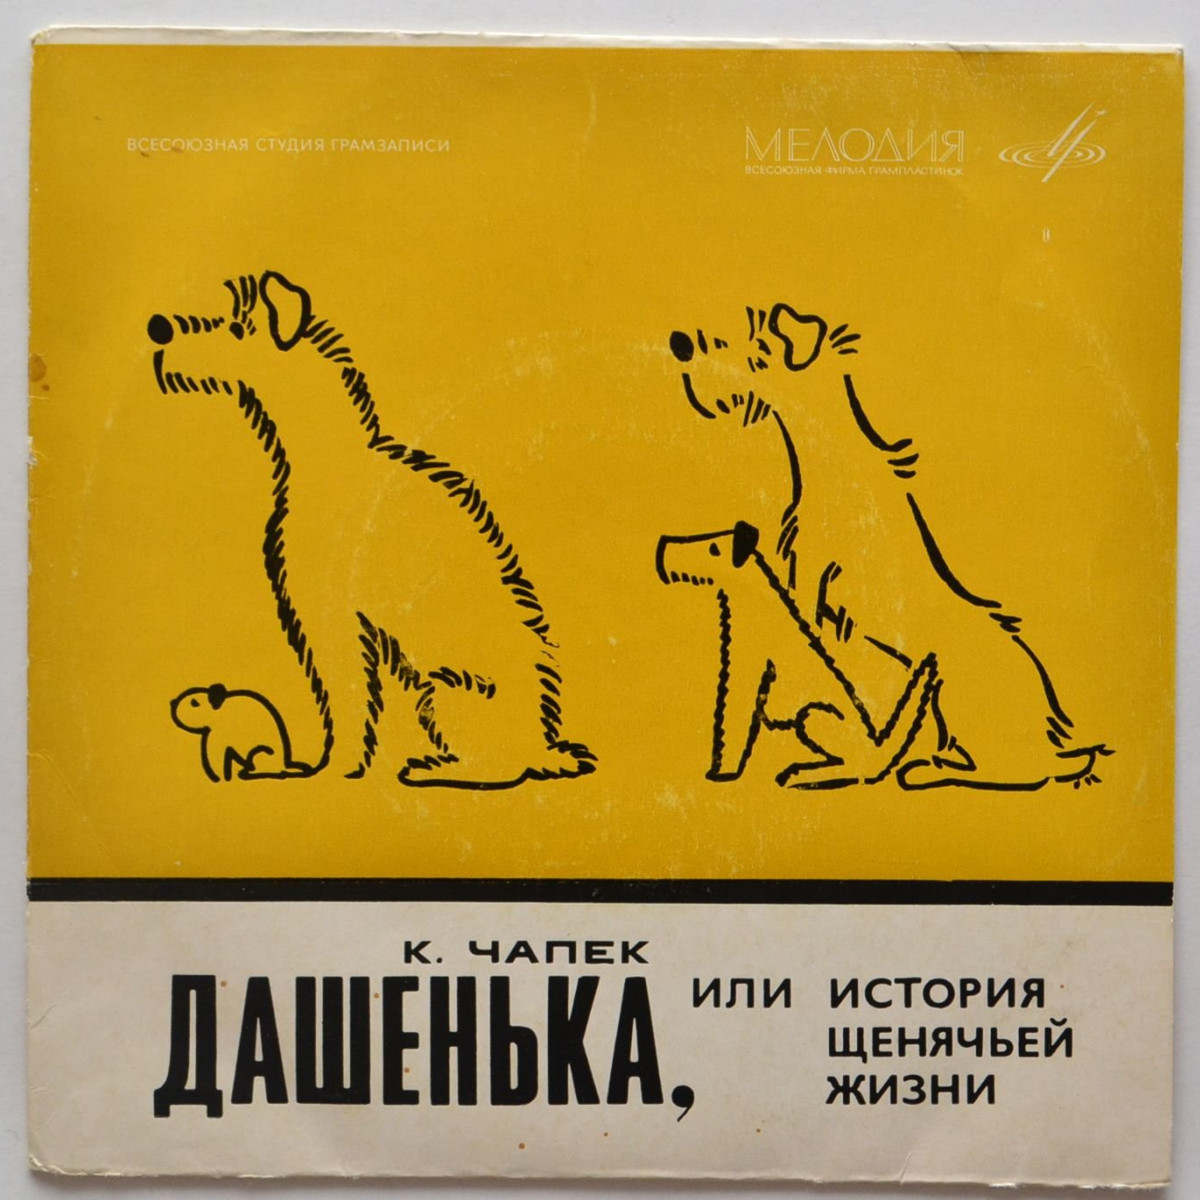 К. ЧАПЕК (1890—1938) Дашенька, или история щенячьей жизни, рассказ (перевод Б. Заходера)  Р. Плятт